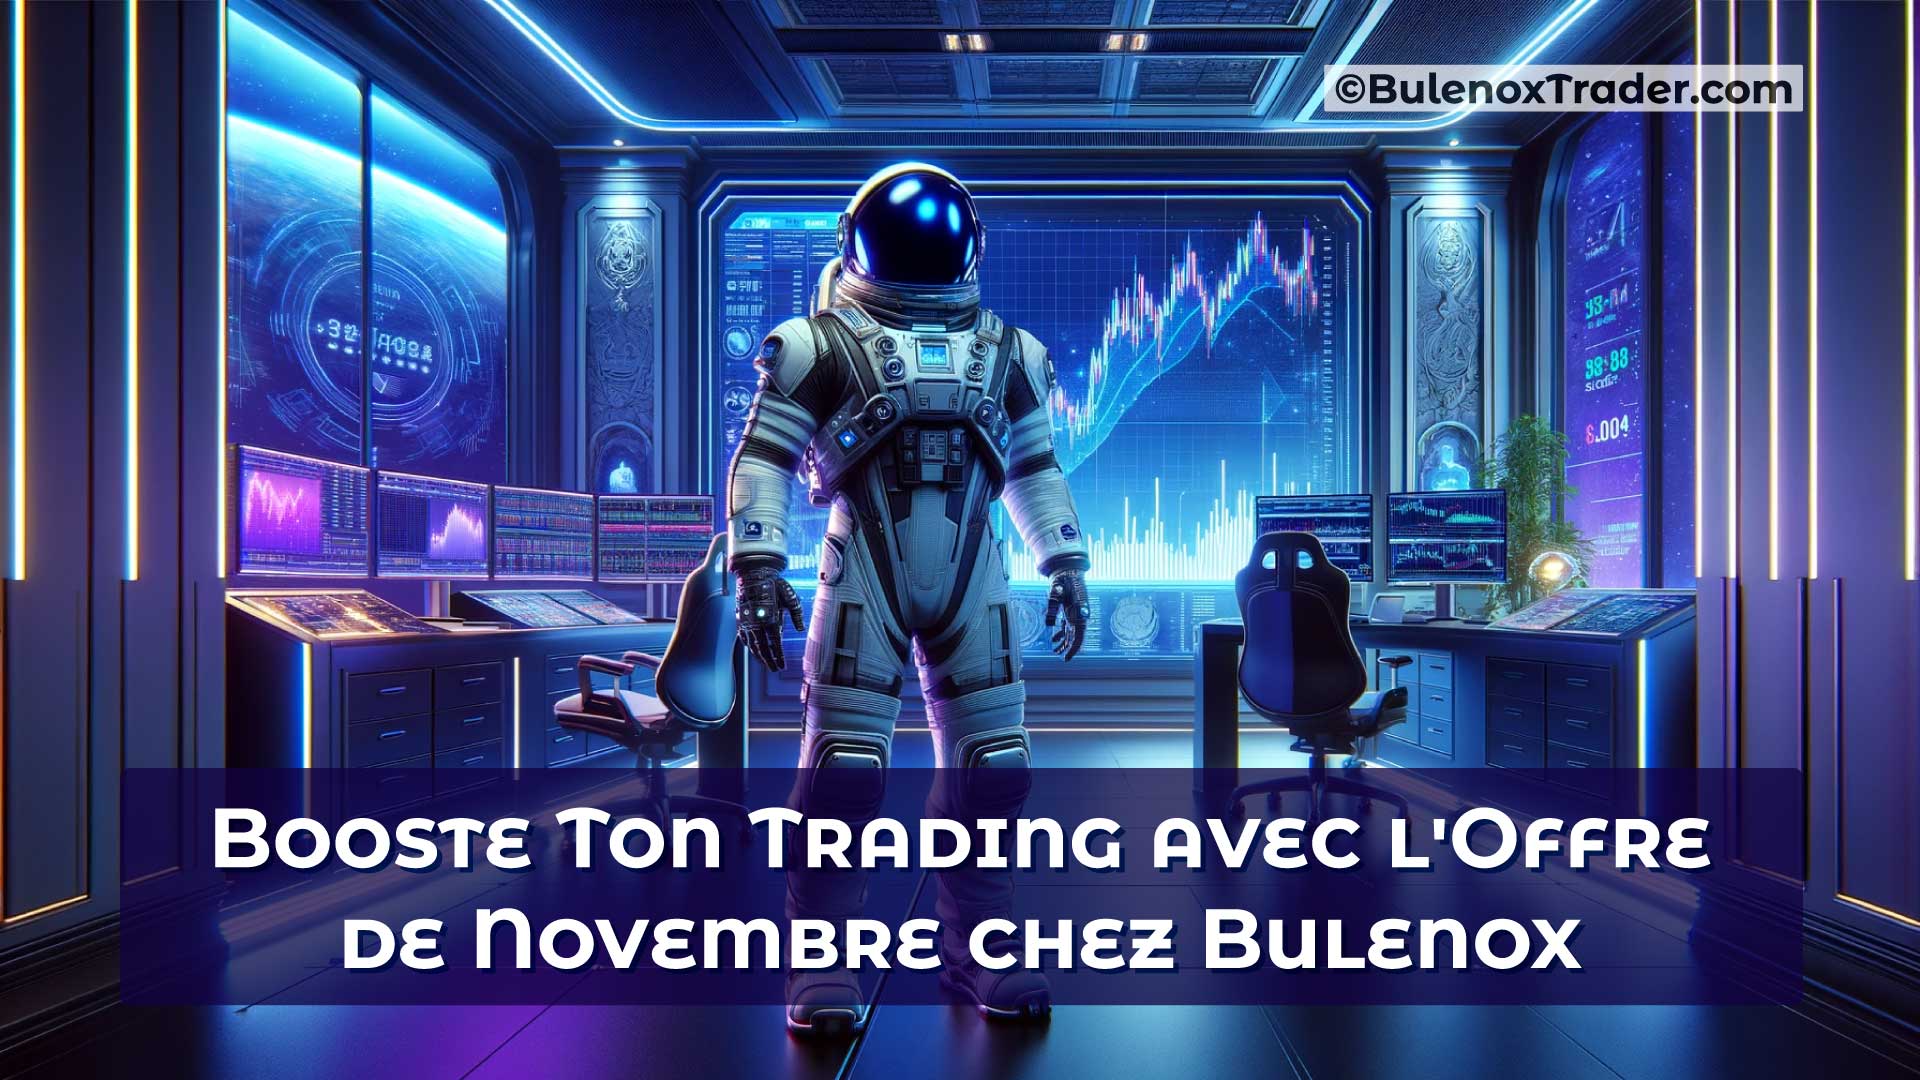 Booste-Ton-Trading-avec-l'Offre-de-Novembre-chez-Bulenox-on-Bulenox-Trader-Website